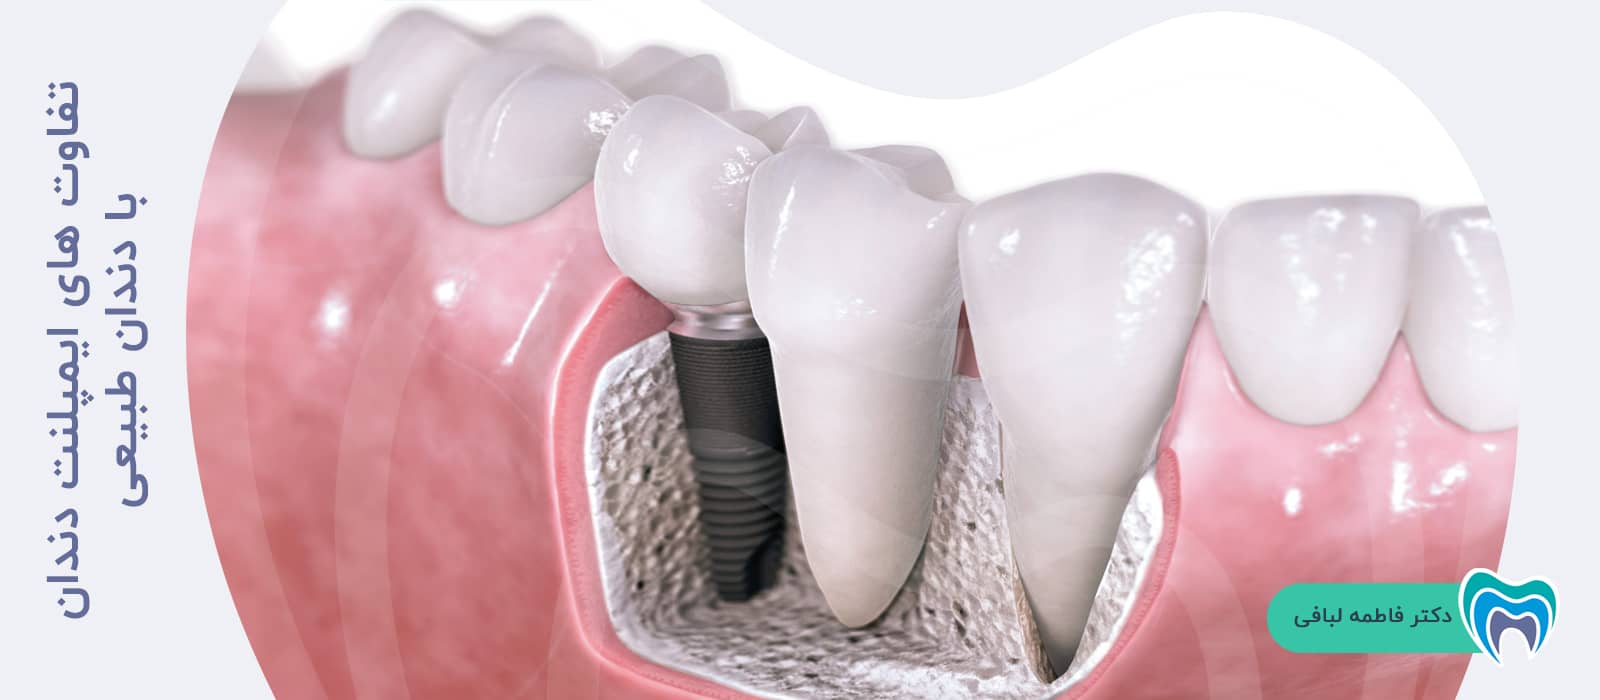 تفاوت های ایمپلنت دندان با دندان طبیعی